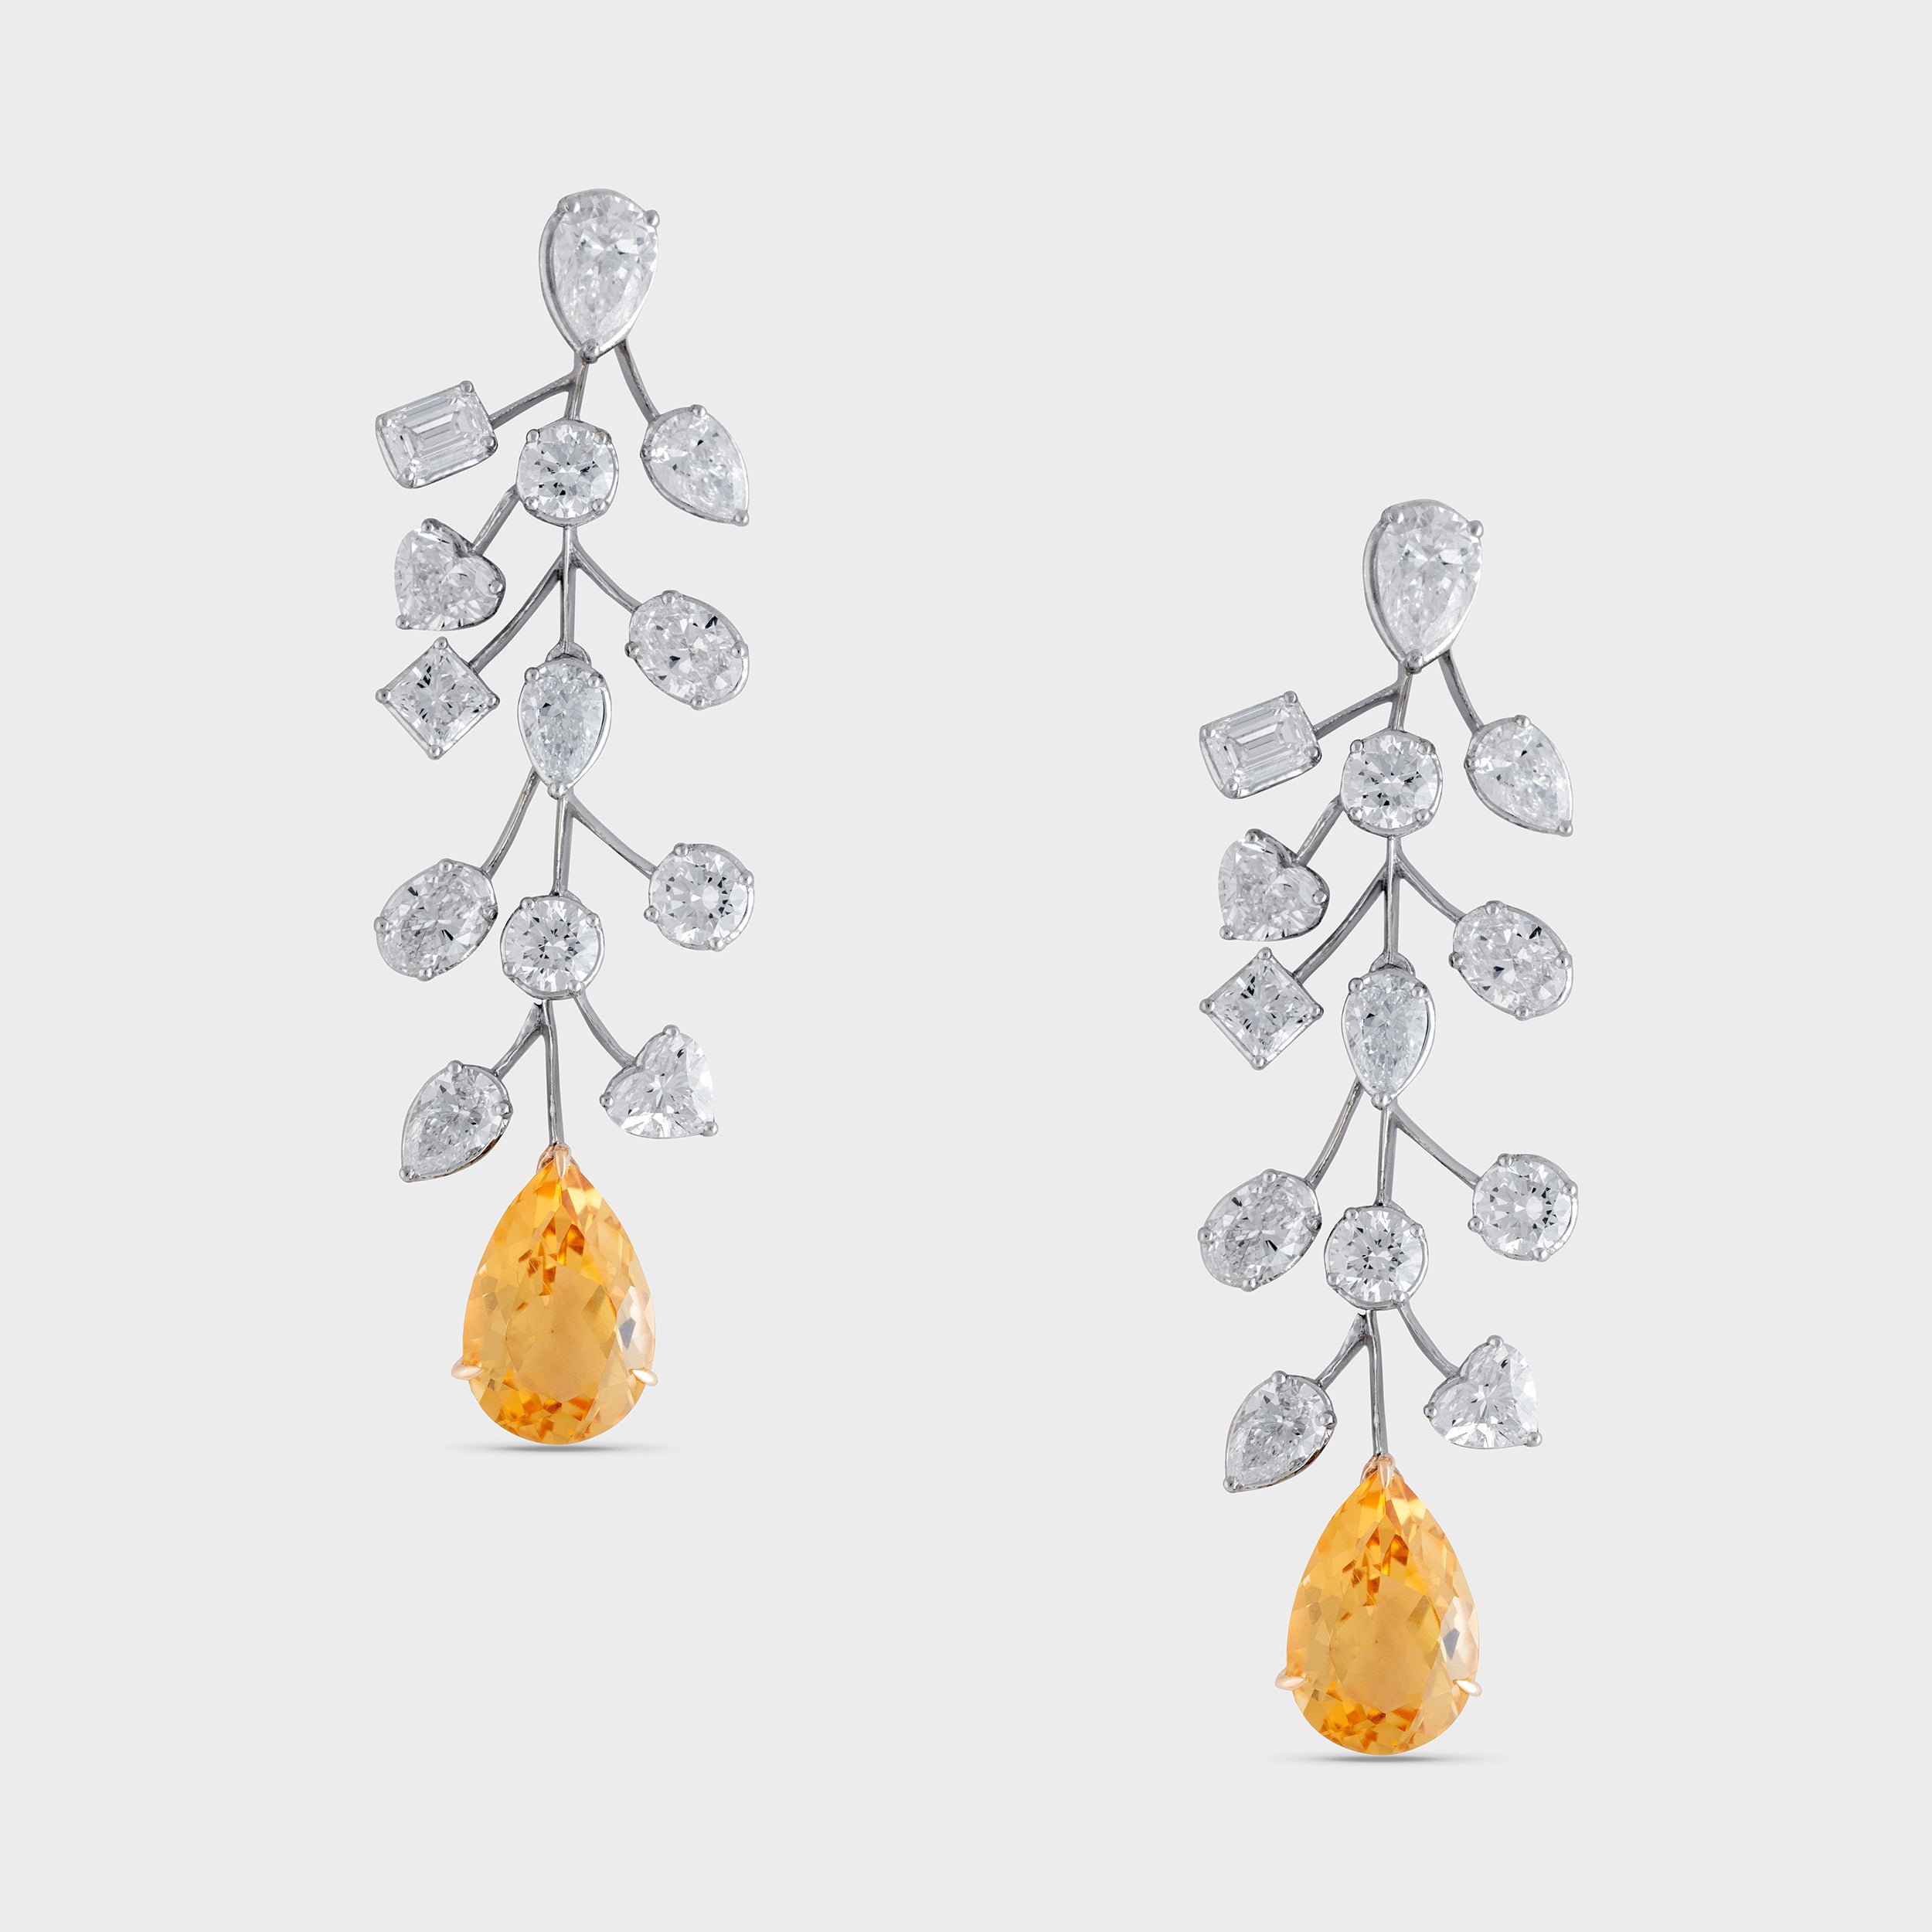 Modern Elegance: Lab-Grown Diamonds Fancy Shaped Eardrops in White Gold | SKU : 0019475561